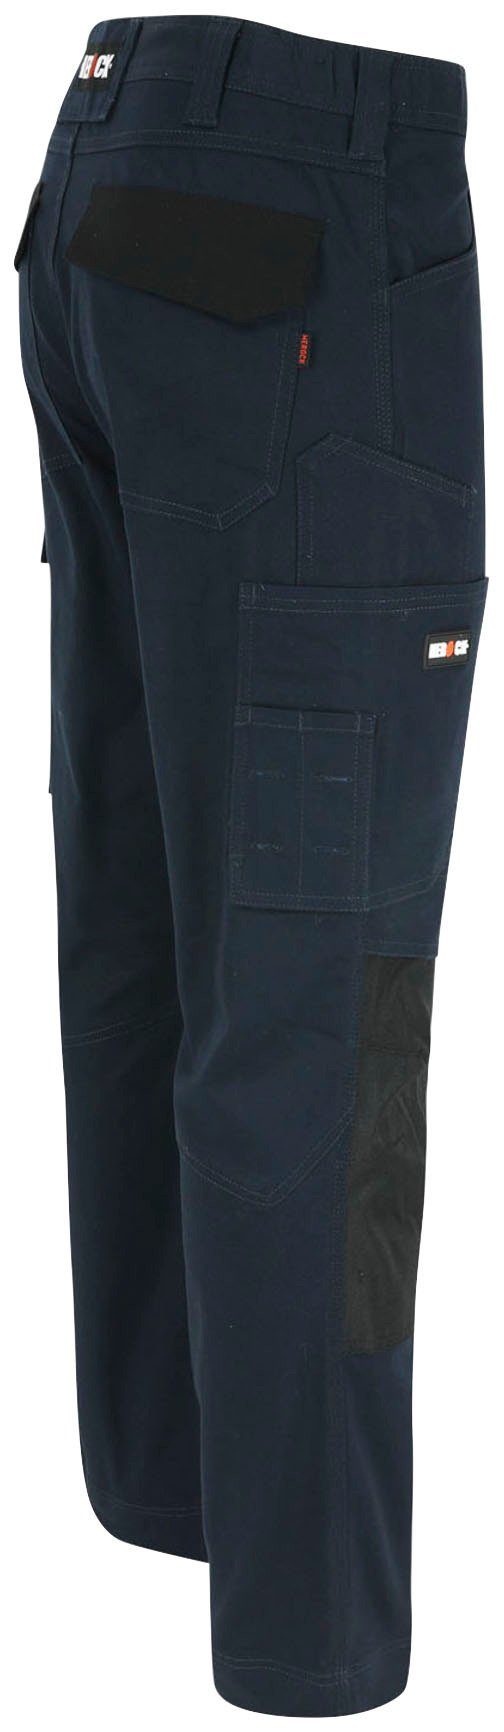 Herock Arbeitshose DERO Slim Multi-Pocket, wasserabweisend marine Passform, 2-Wege-Stretch, Fit